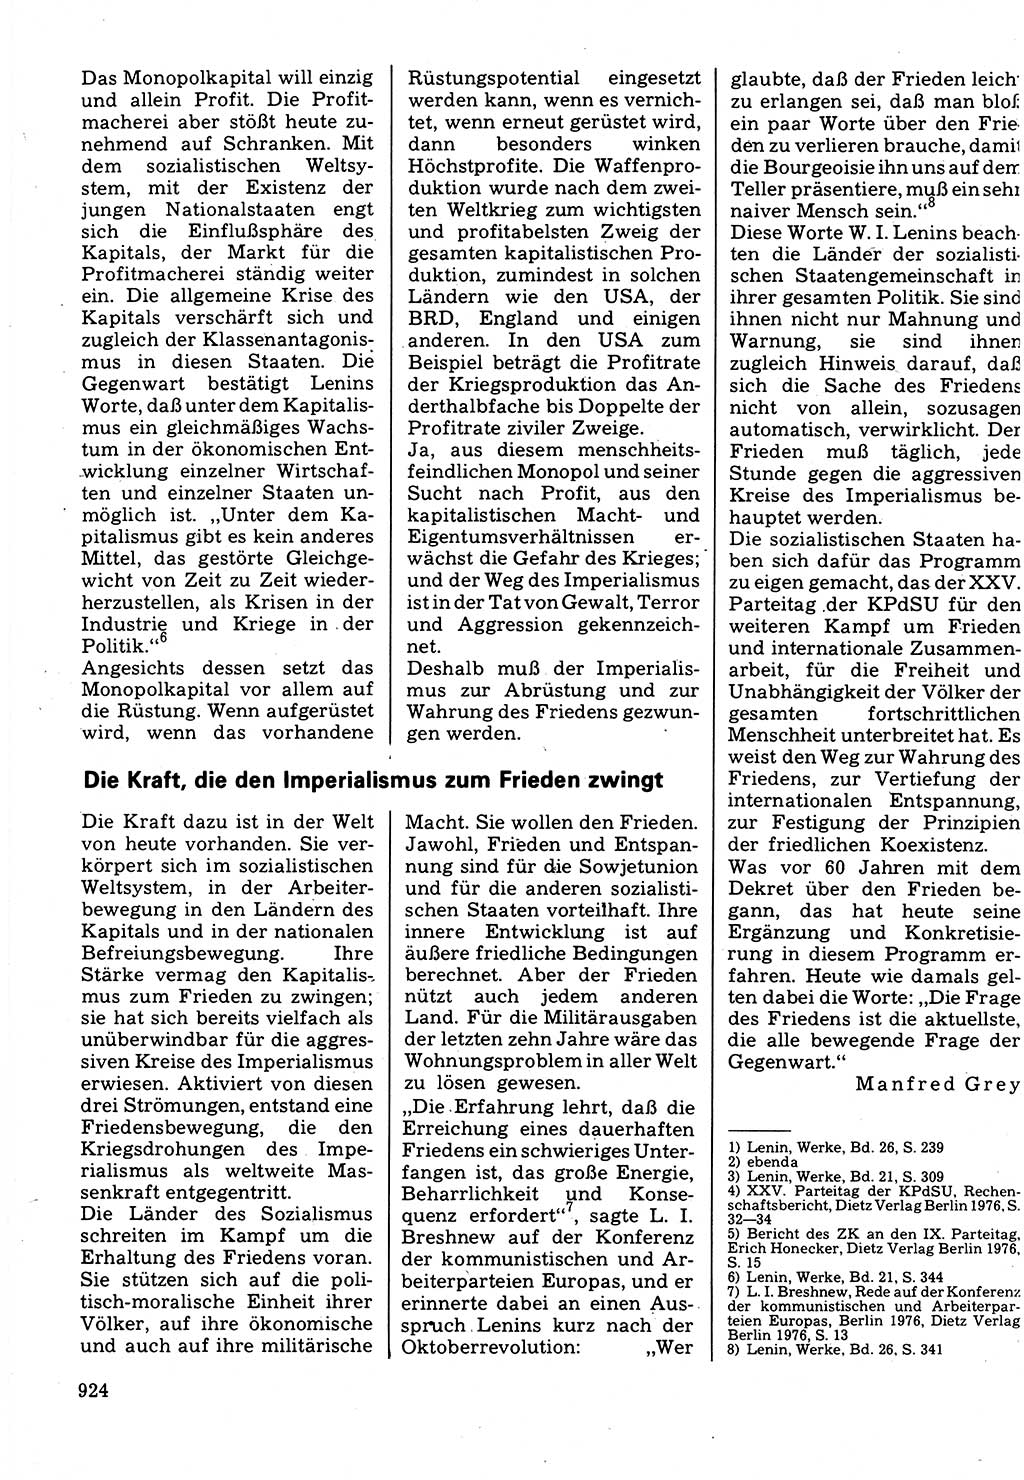 Neuer Weg (NW), Organ des Zentralkomitees (ZK) der SED (Sozialistische Einheitspartei Deutschlands) für Fragen des Parteilebens, 32. Jahrgang [Deutsche Demokratische Republik (DDR)] 1977, Seite 924 (NW ZK SED DDR 1977, S. 924)